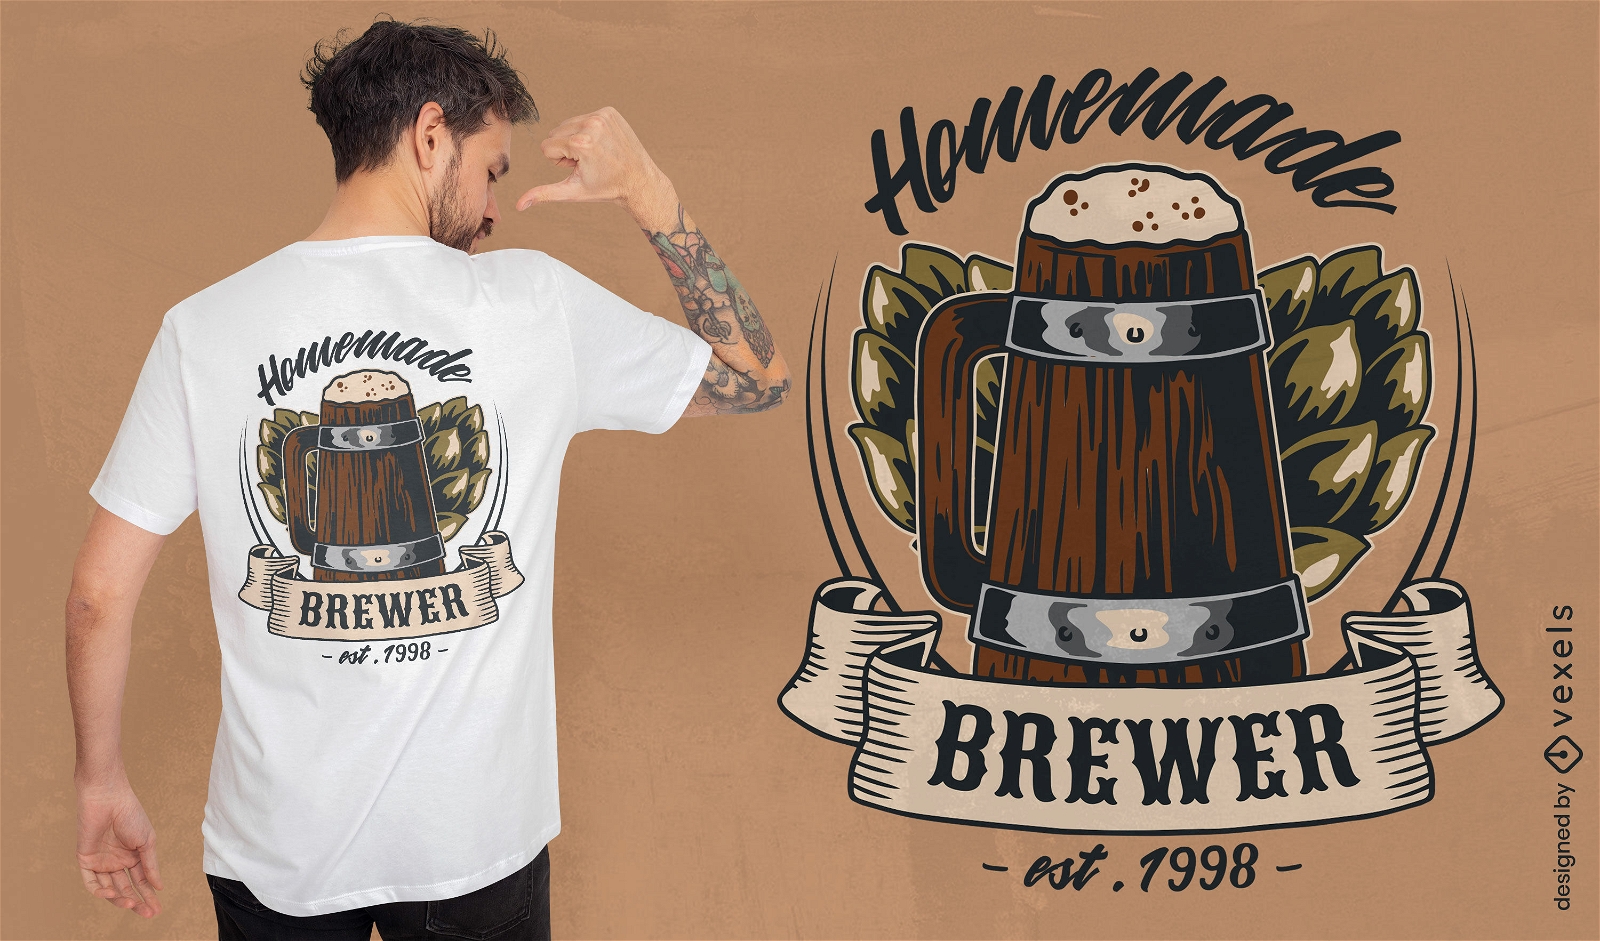 Dise?o de camiseta de cerveza cervecera casera.